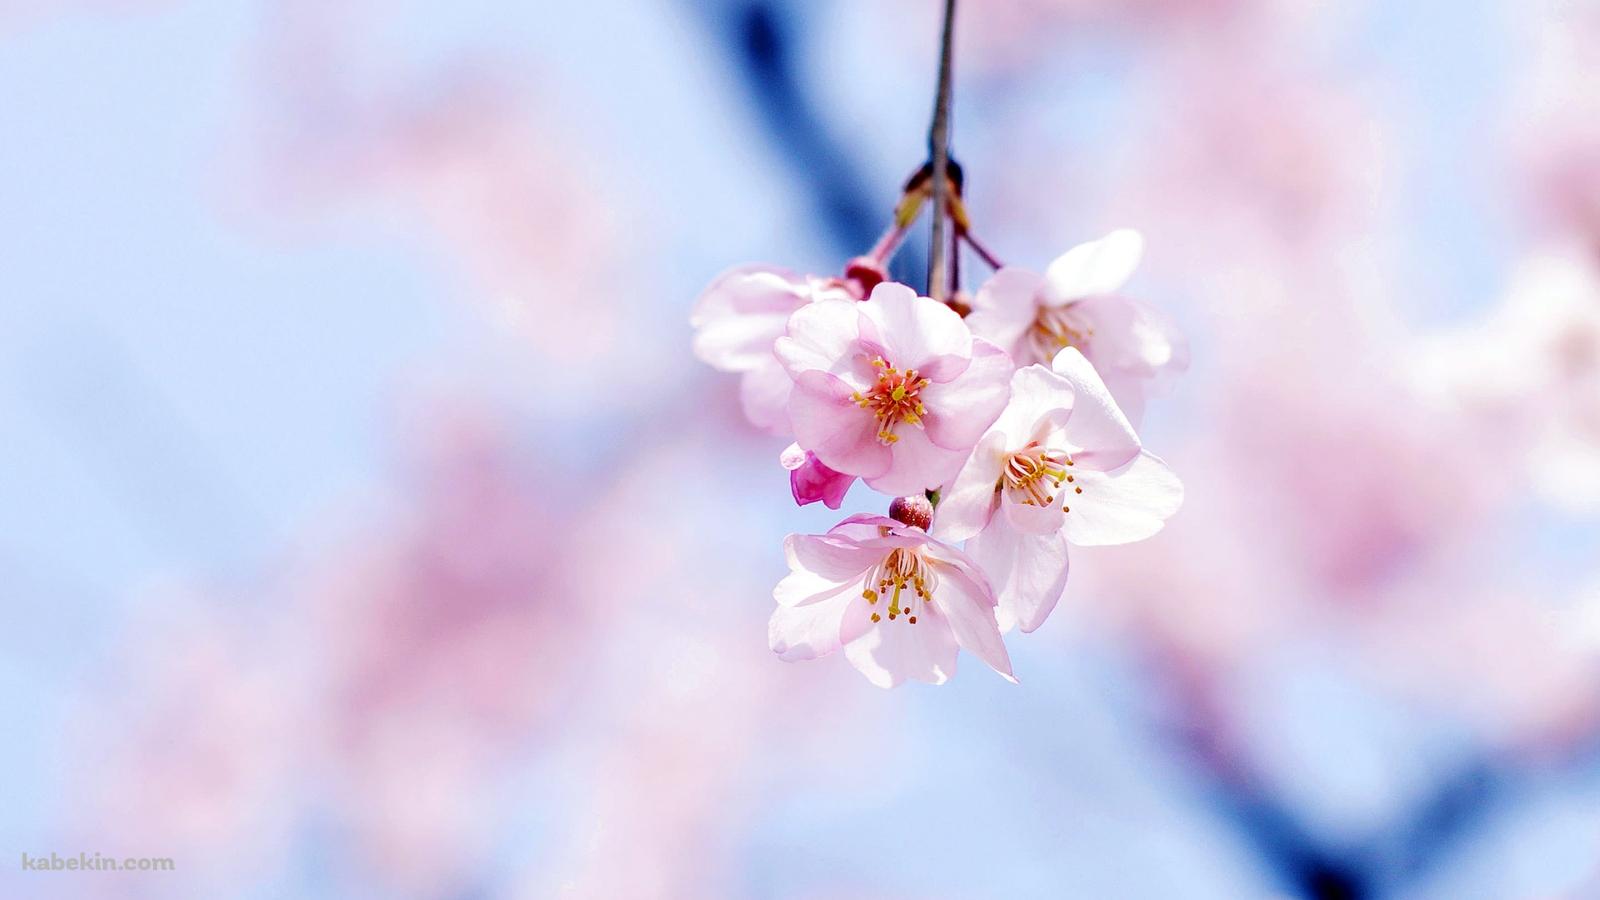 綺麗な桜の花の壁紙(1600px x 900px) 高画質 PC・デスクトップ用